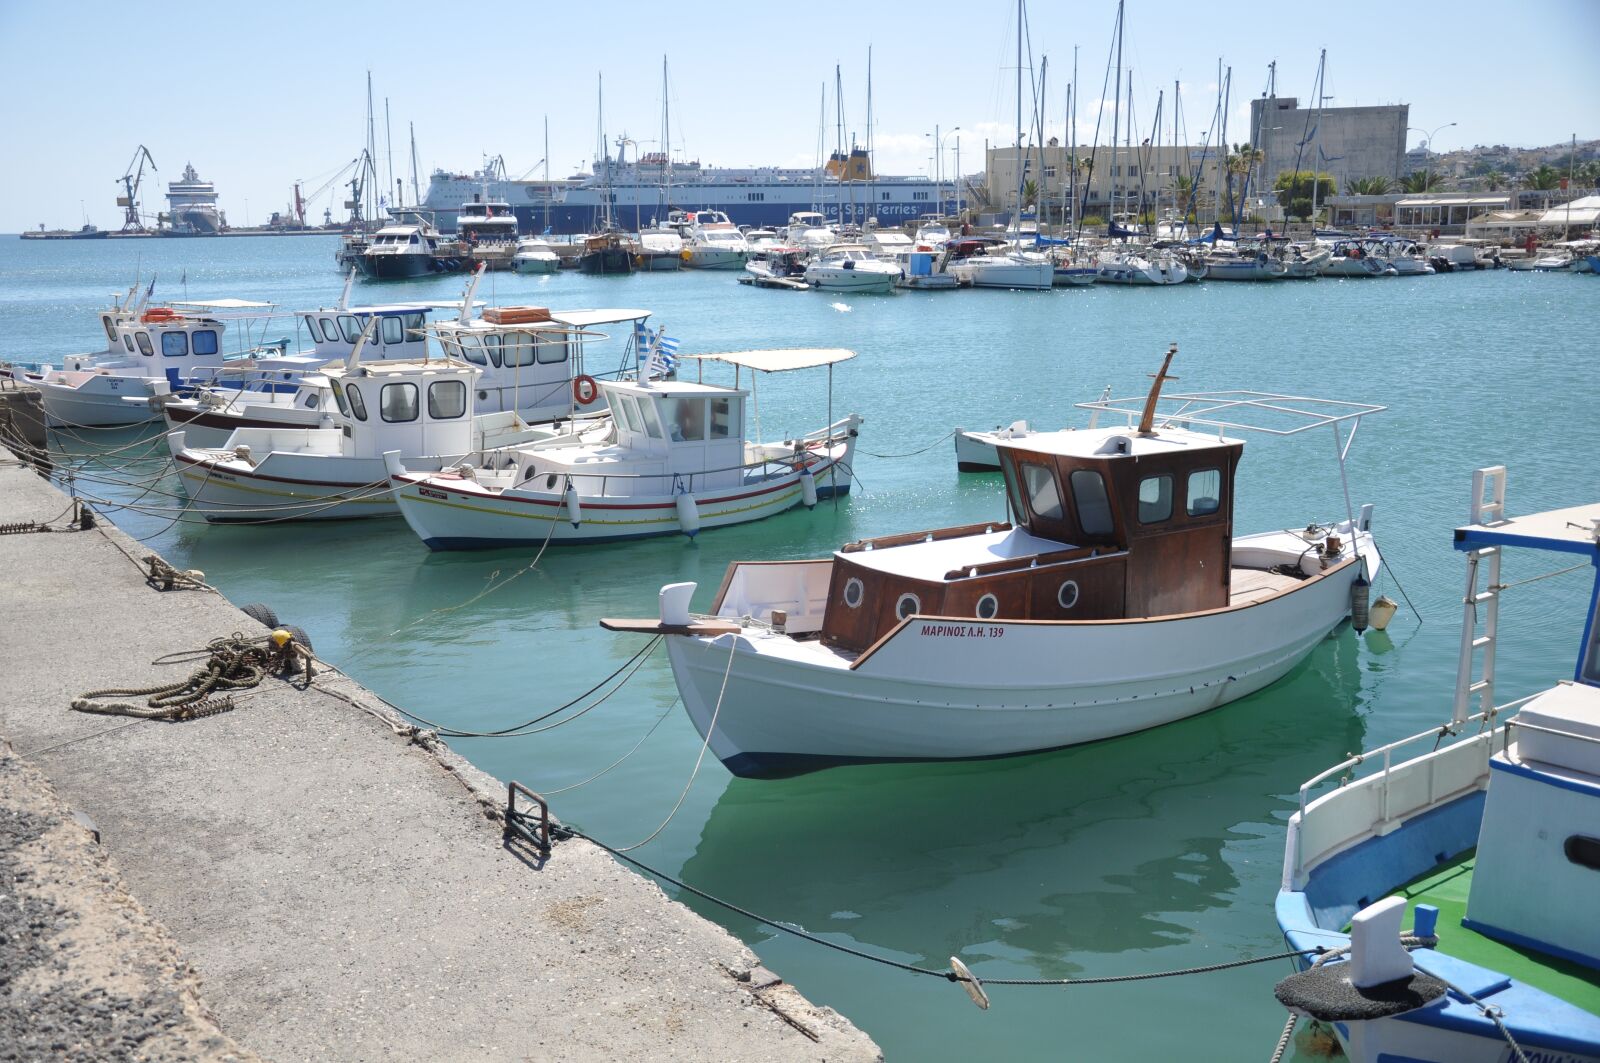 Nikon D90 sample photo. Boats, sea, sun photography